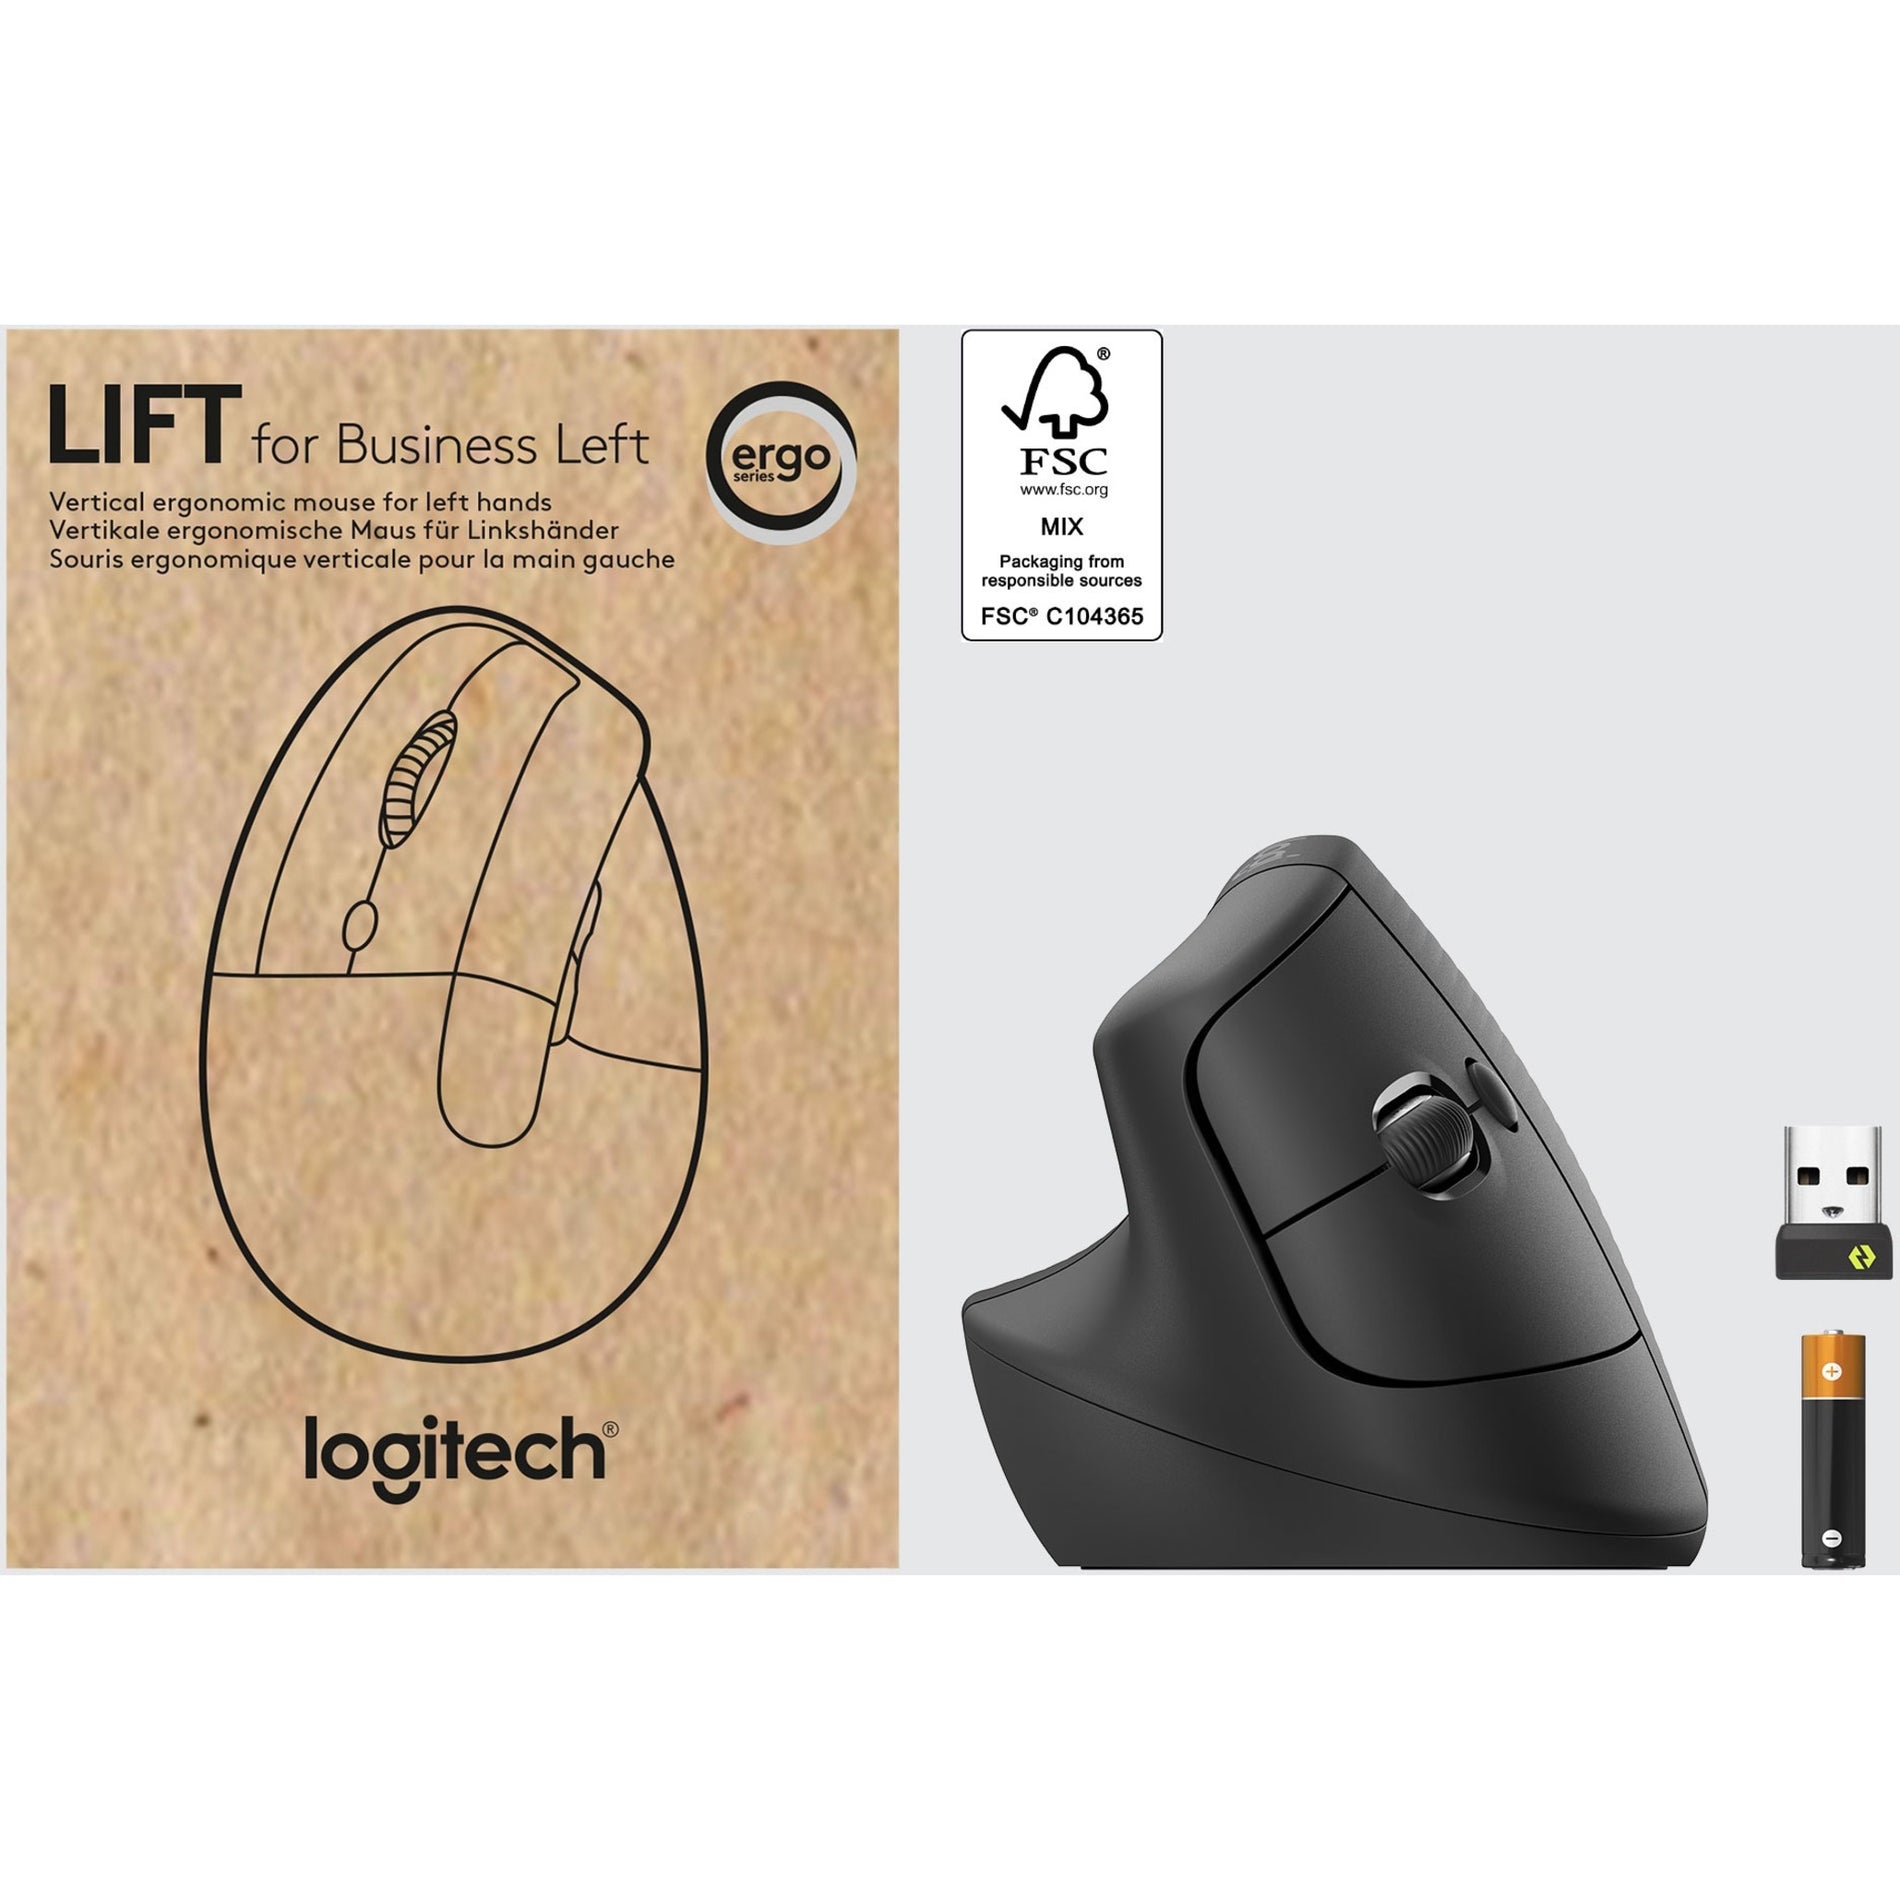 Logitech 910-006492 Lift Ergo Mouse, Left-Handed, Graphite, Wireless, 4000 dpi